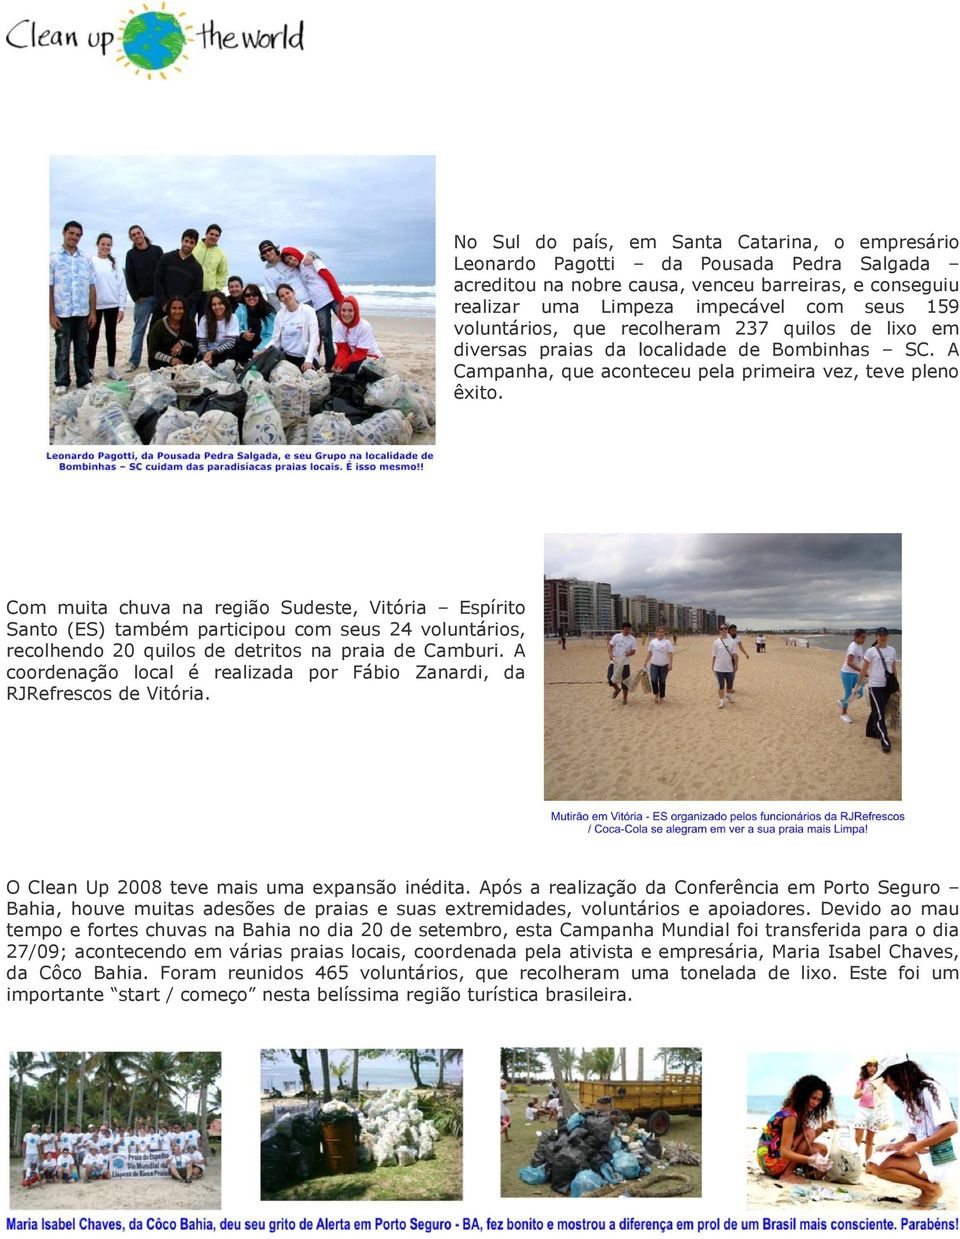 Com muita chuva na região Sudeste, Vitória Espírito Santo (ES) também participou com seus 24 voluntários, recolhendo 20 quilos de detritos na praia de Camburi.